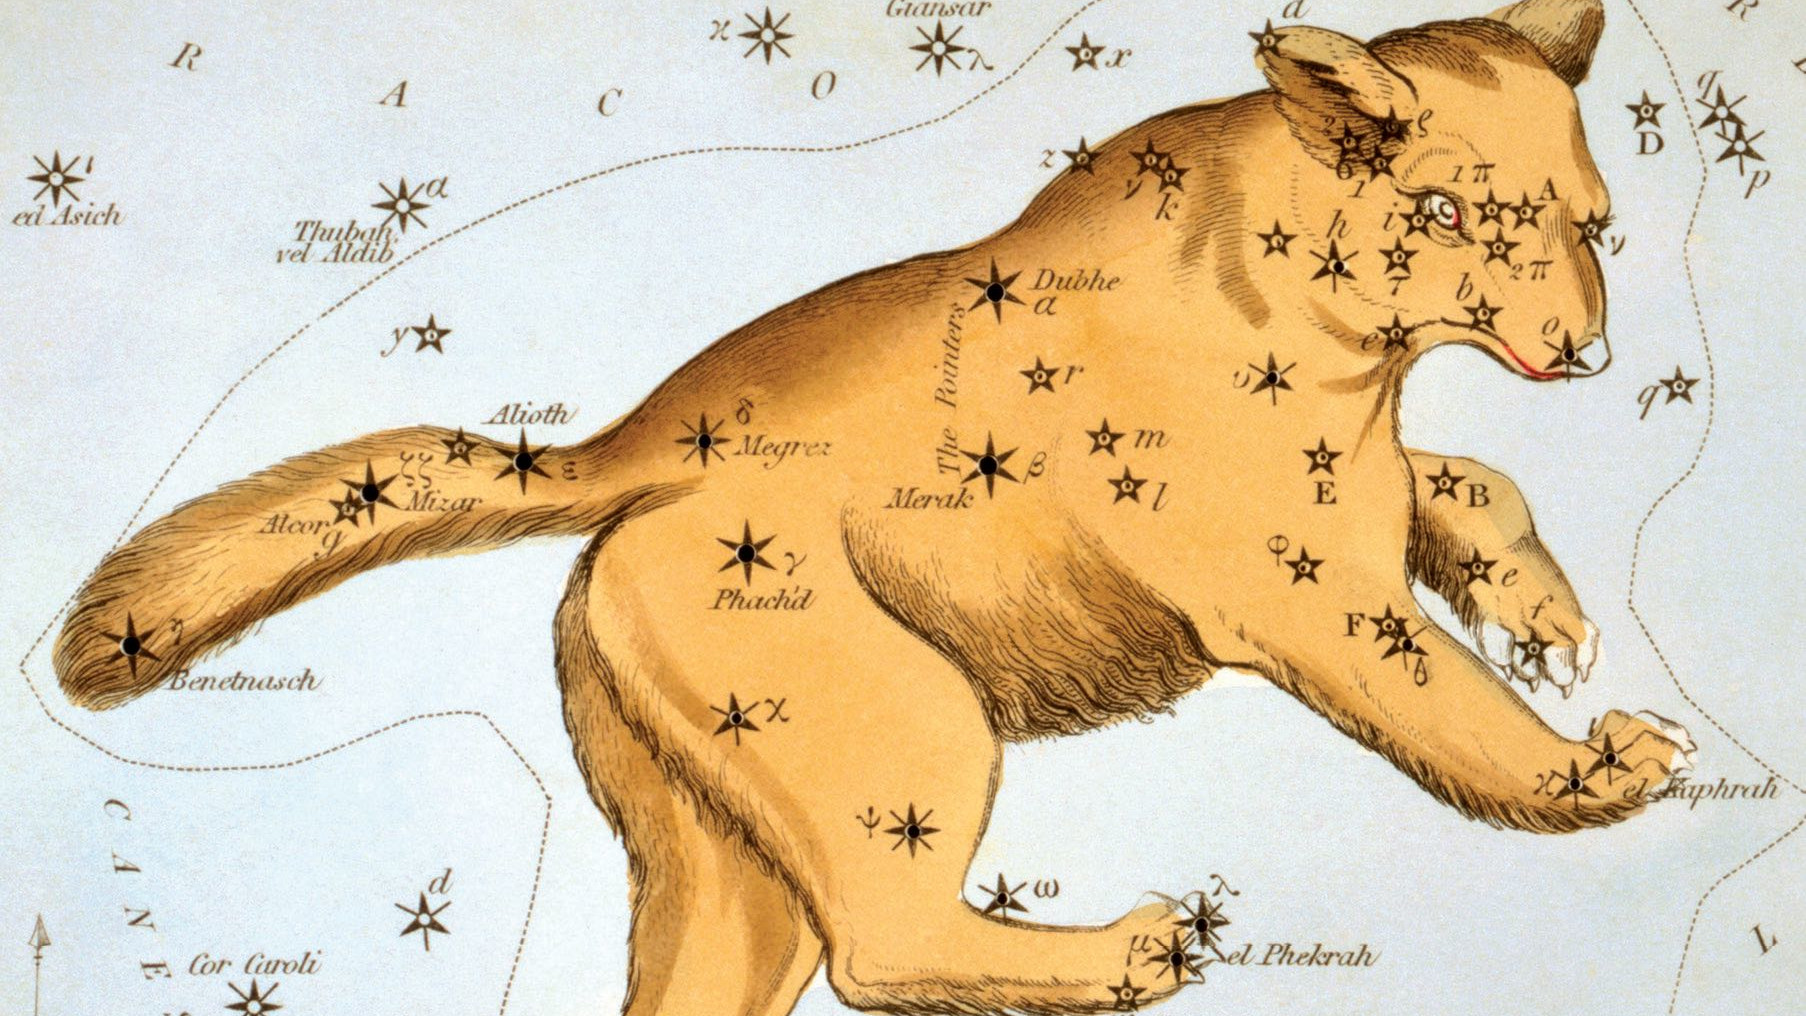 W tylnej części Wielkiej Niedźwiedzicy znajduje się najbardziej znany układ gwiazd (asteryzm): Wielki Wóz